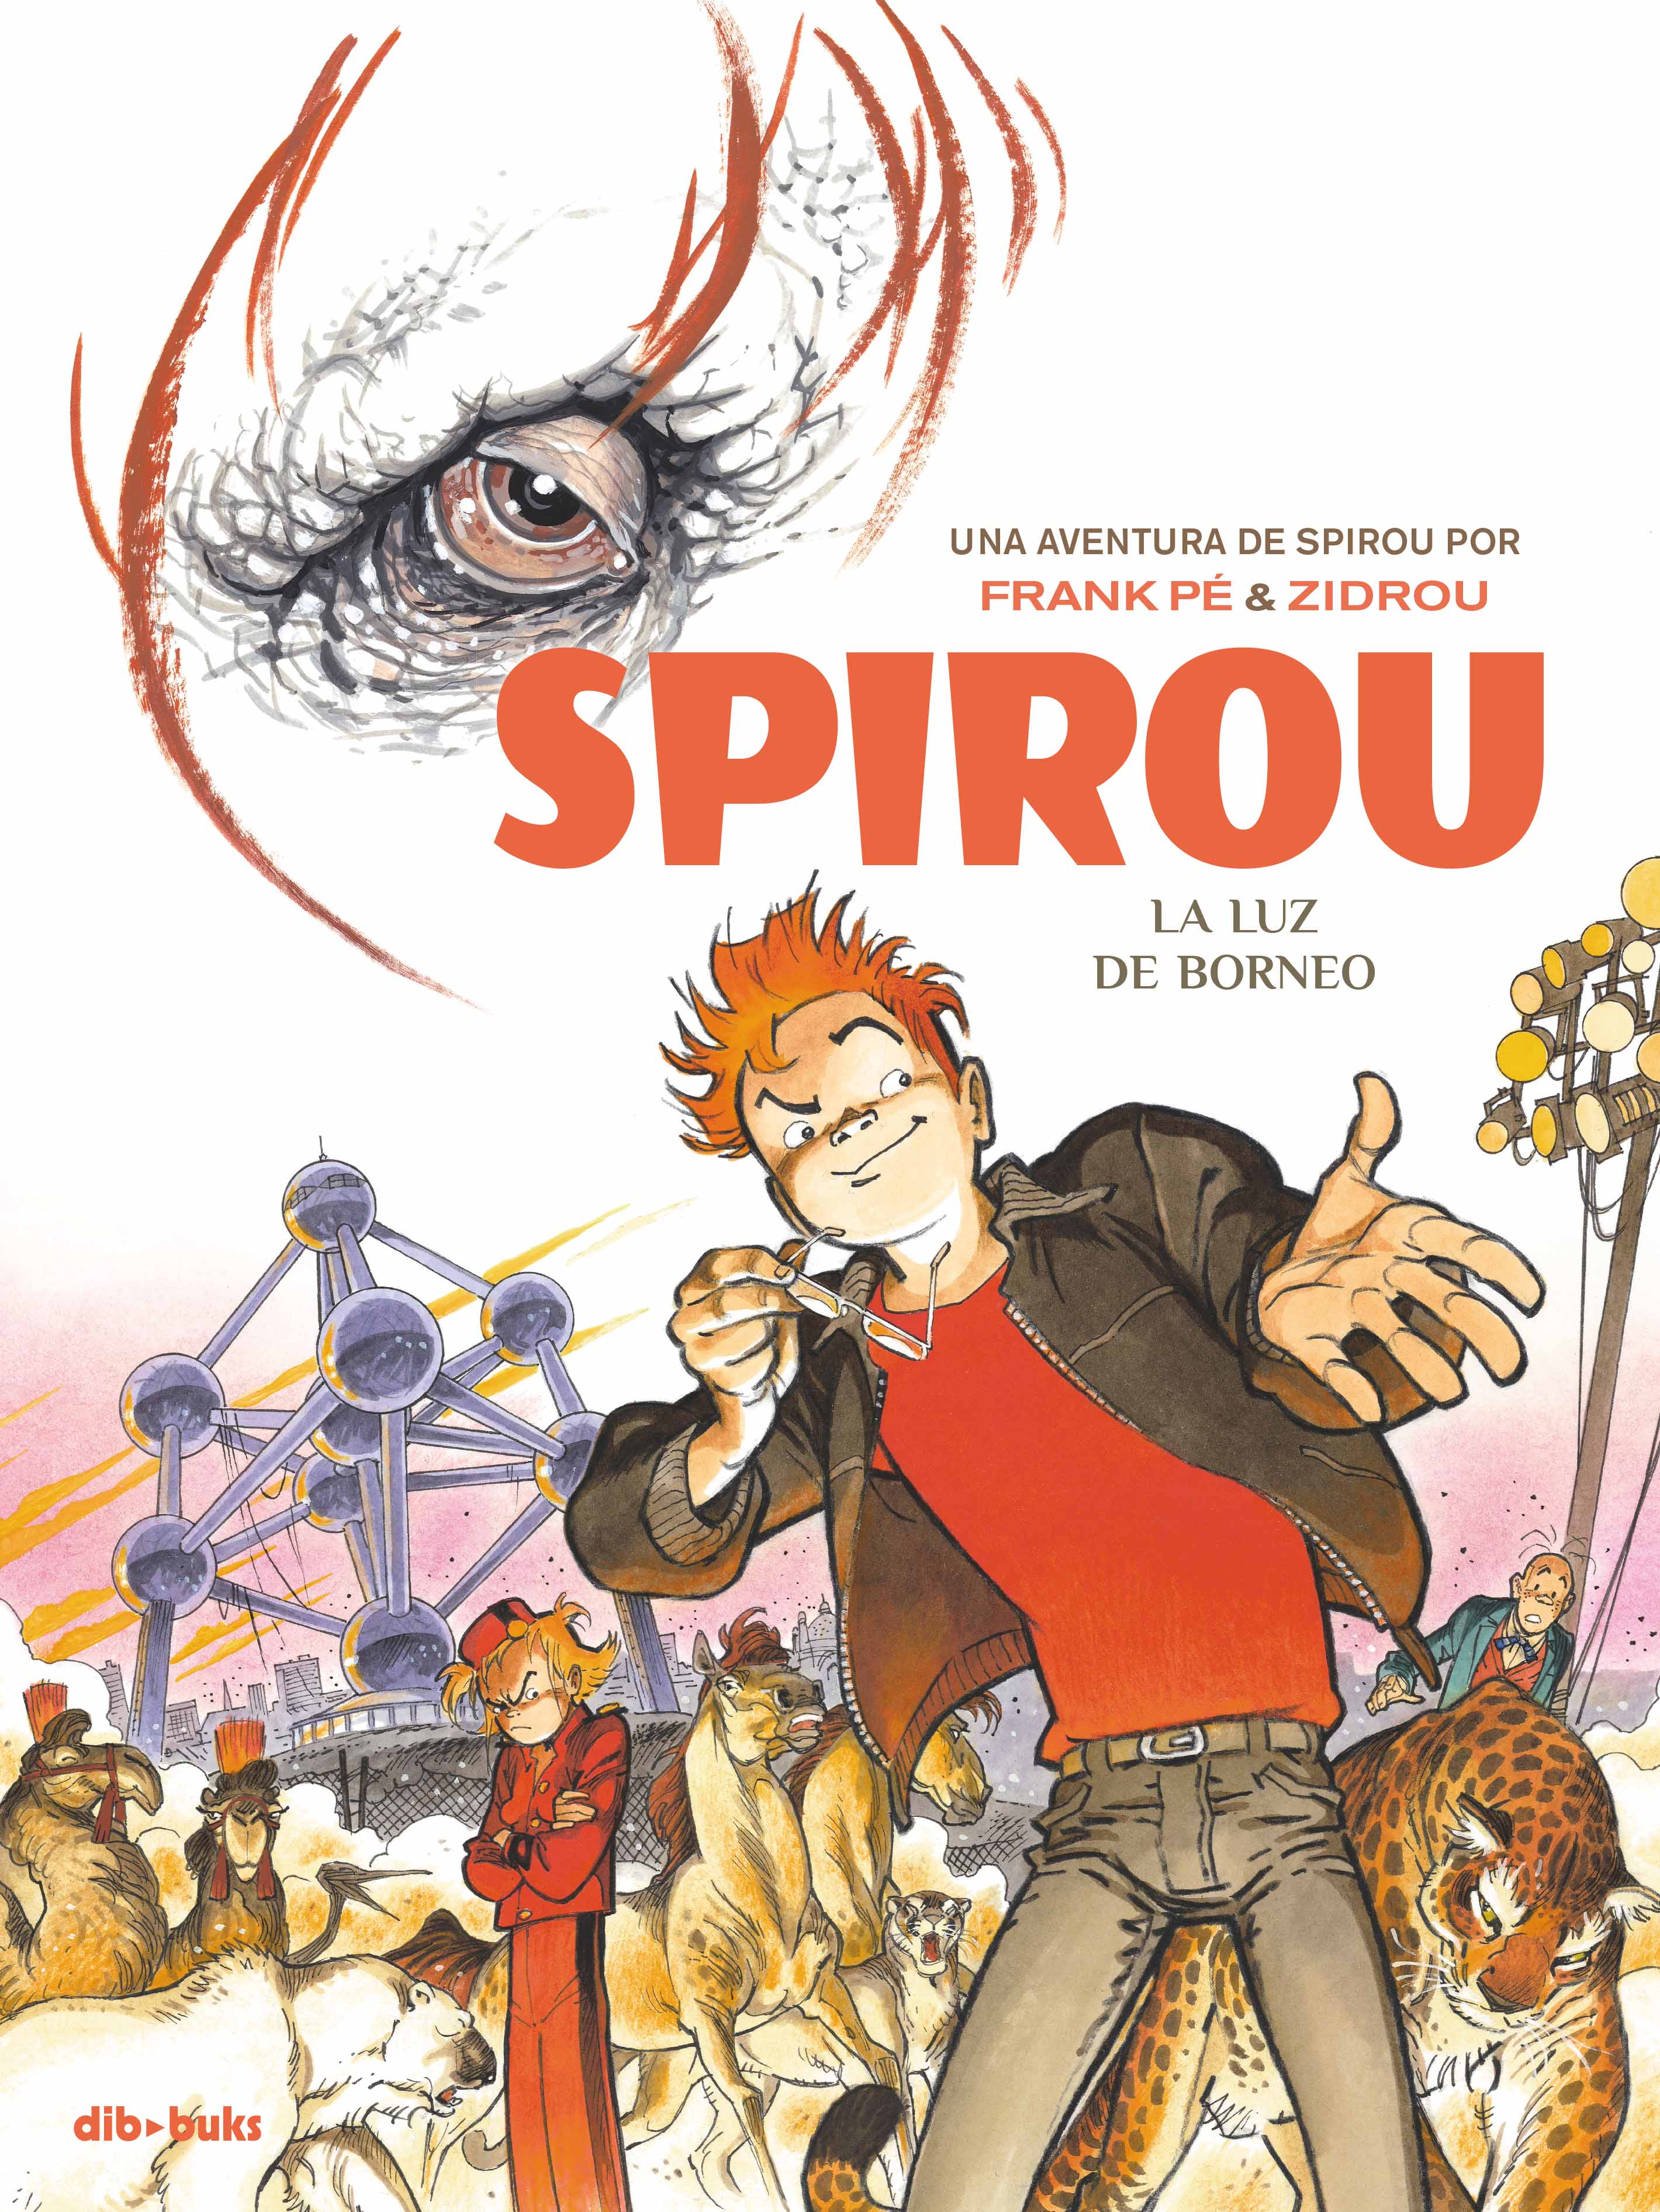 La luz de Borneo «Una aventura de Spirou por Frank Pé y Zidrou» (9788416507498)